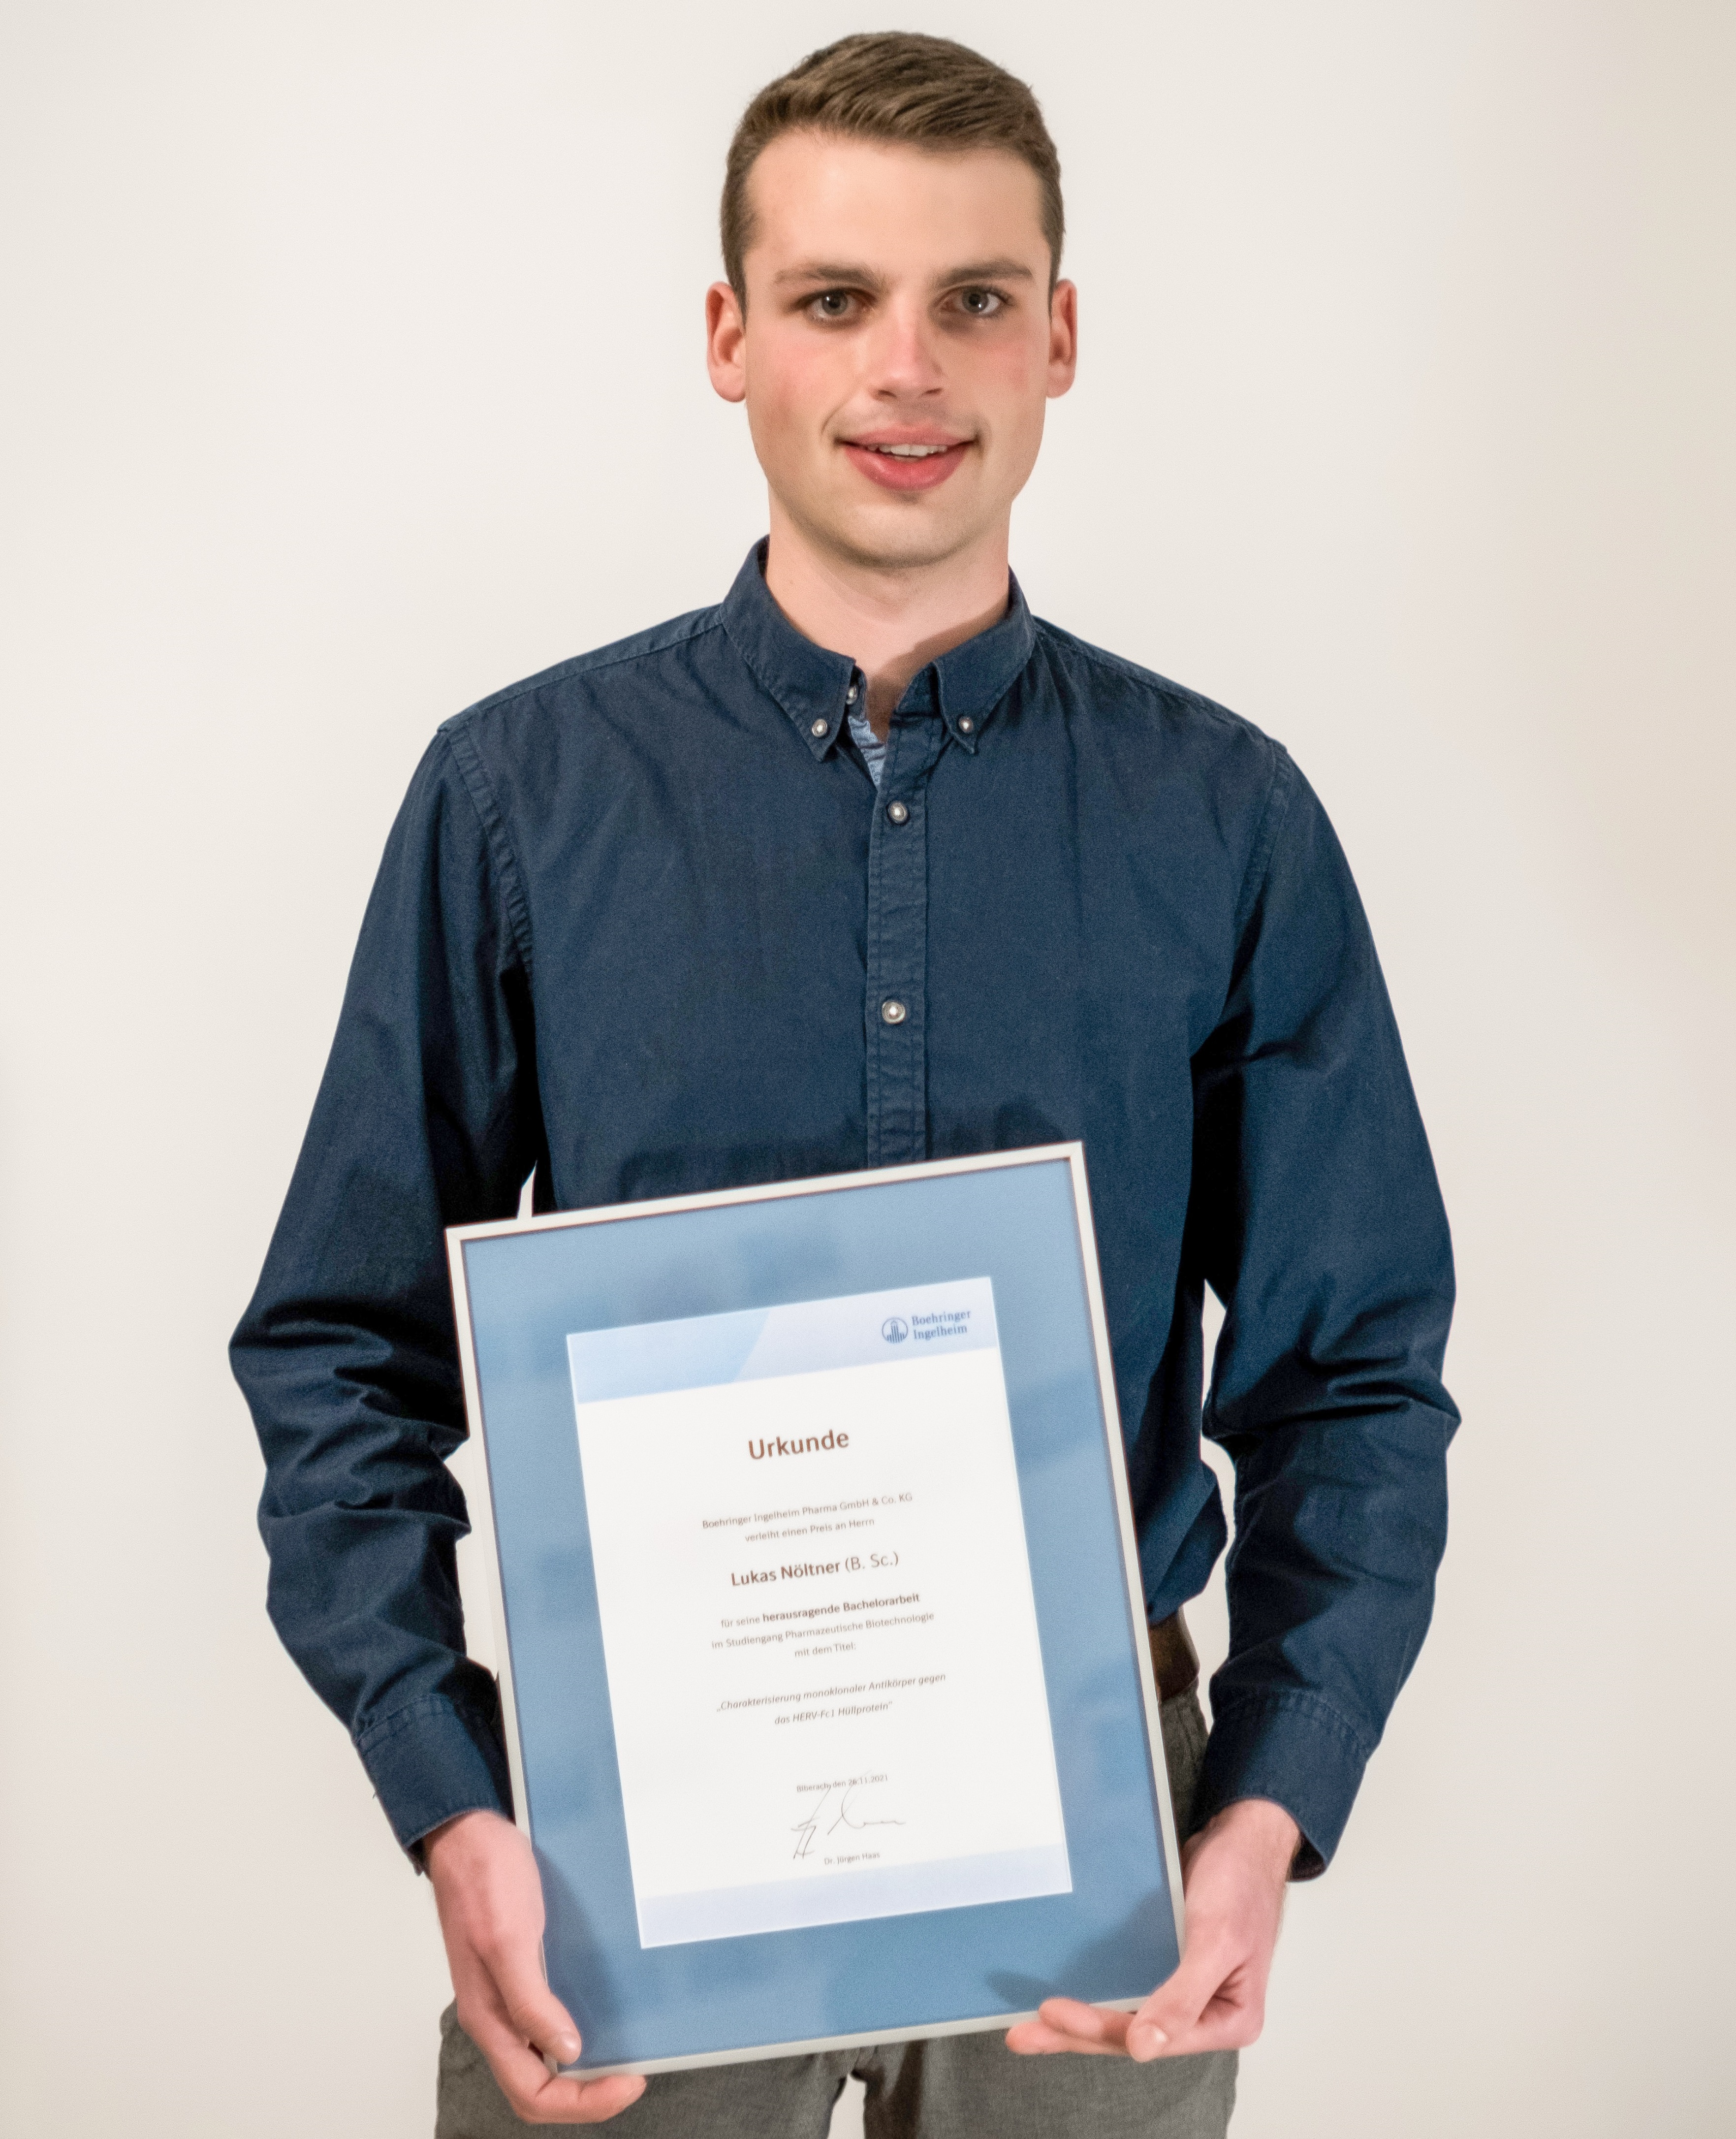 Lukas Nöltner standing with certificate